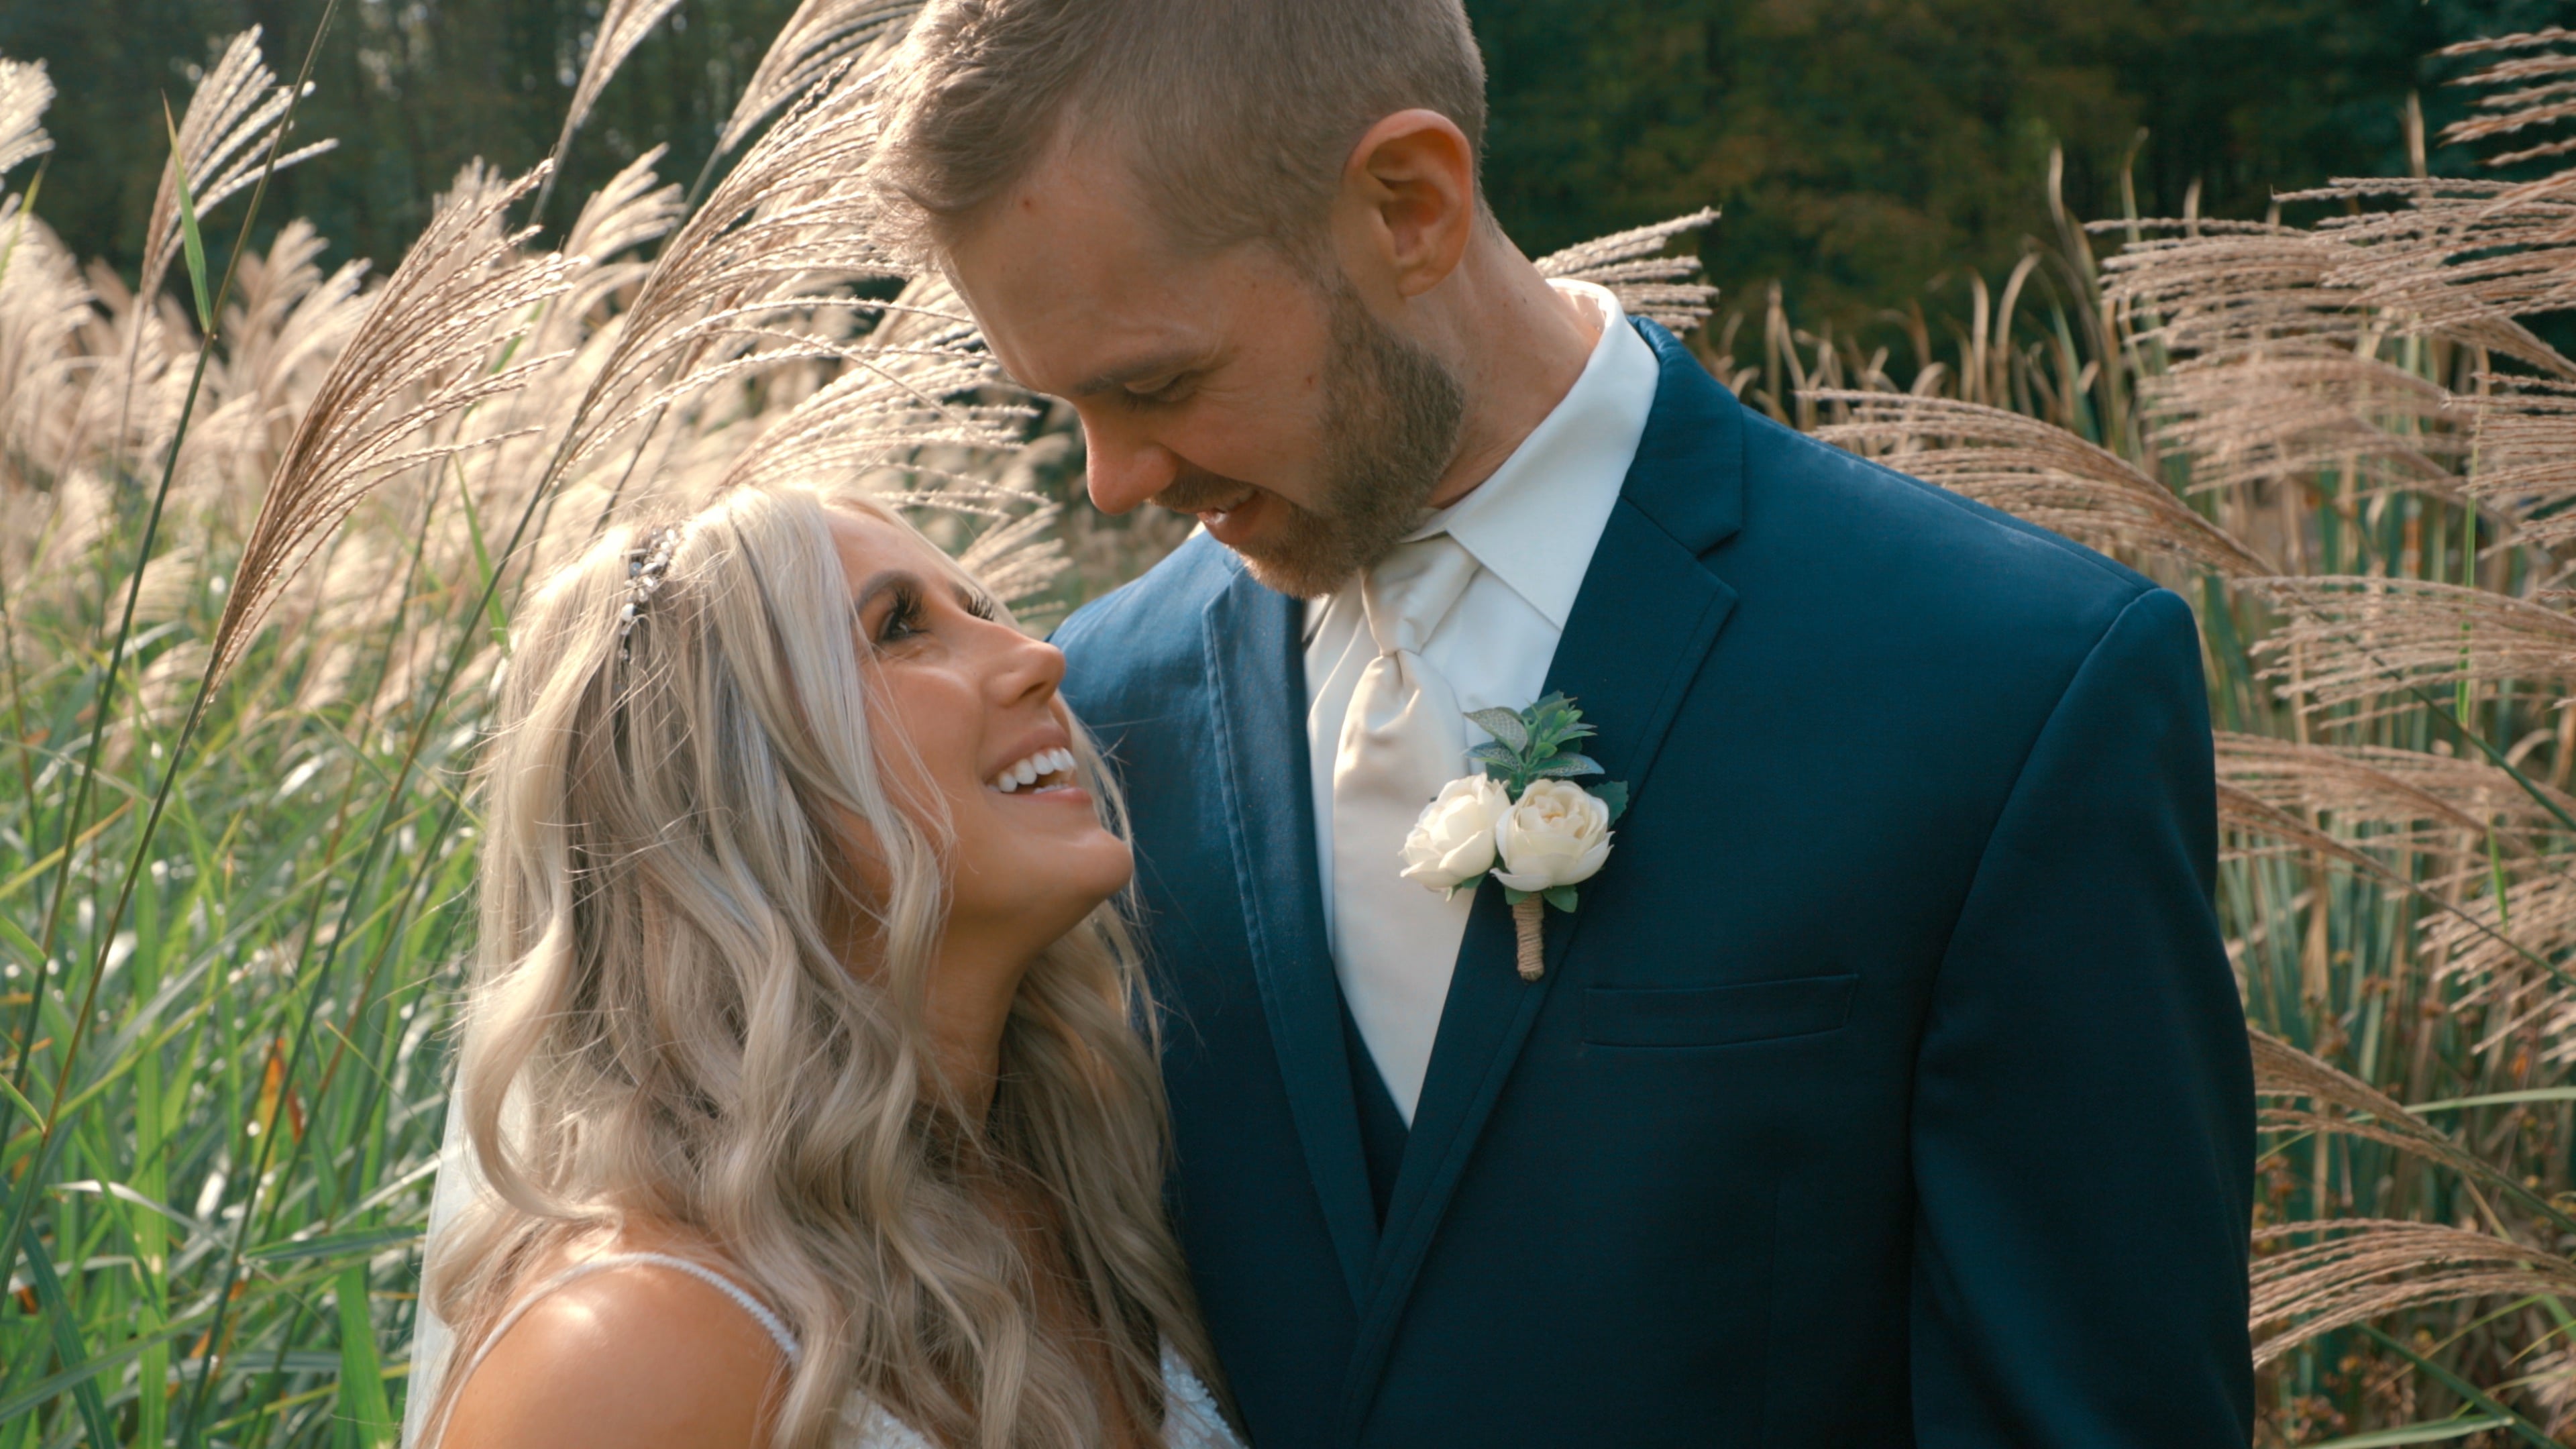 Jon & Kayla Wedding Highlight Video on Vimeo